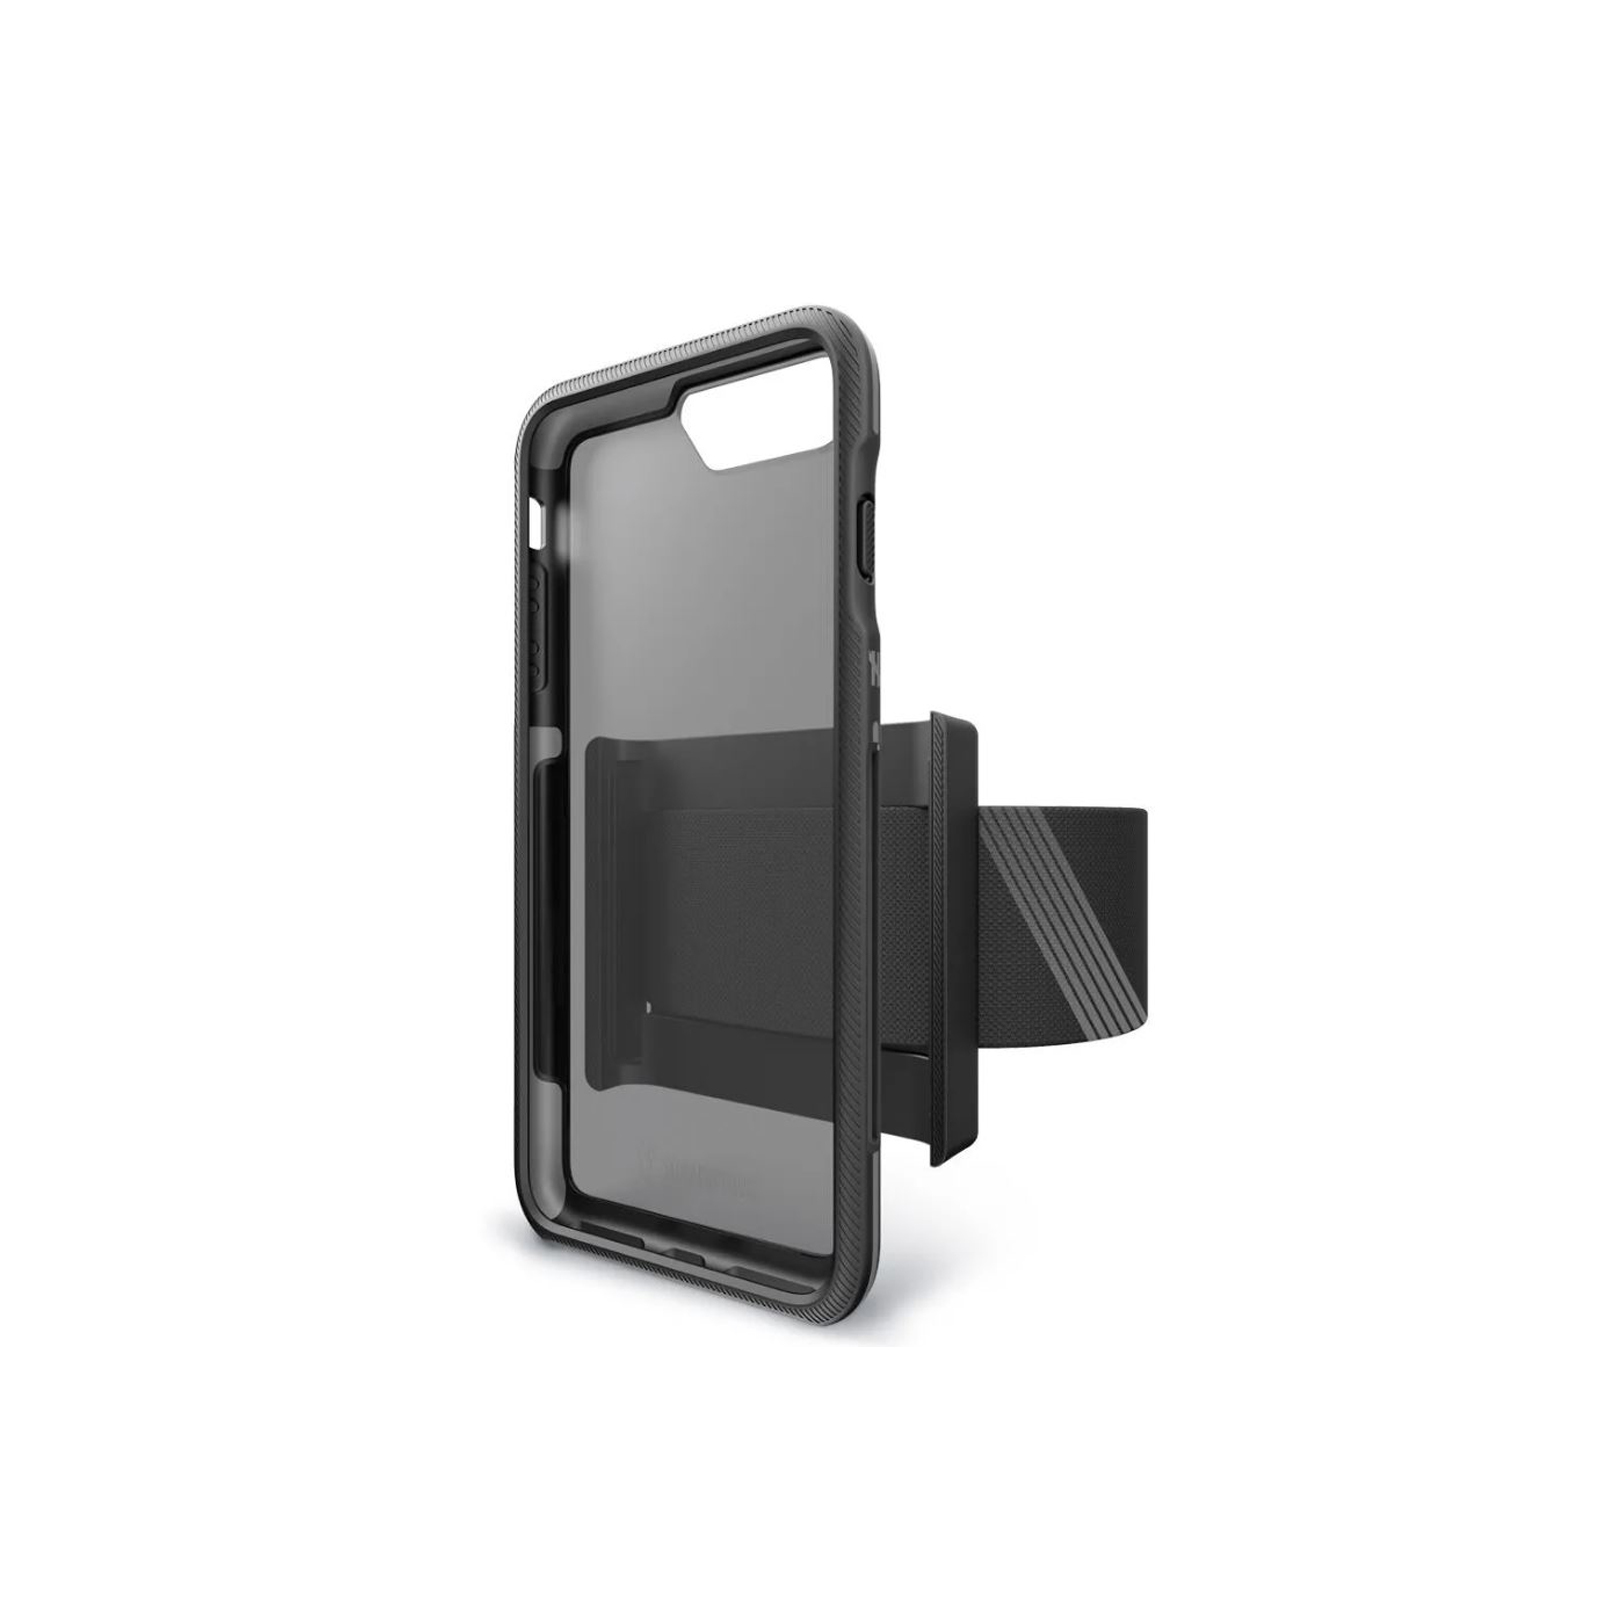 Trainr Pro iPhone 6 Plus / 7 Plus / 8 Plus Case [Black / Gray]